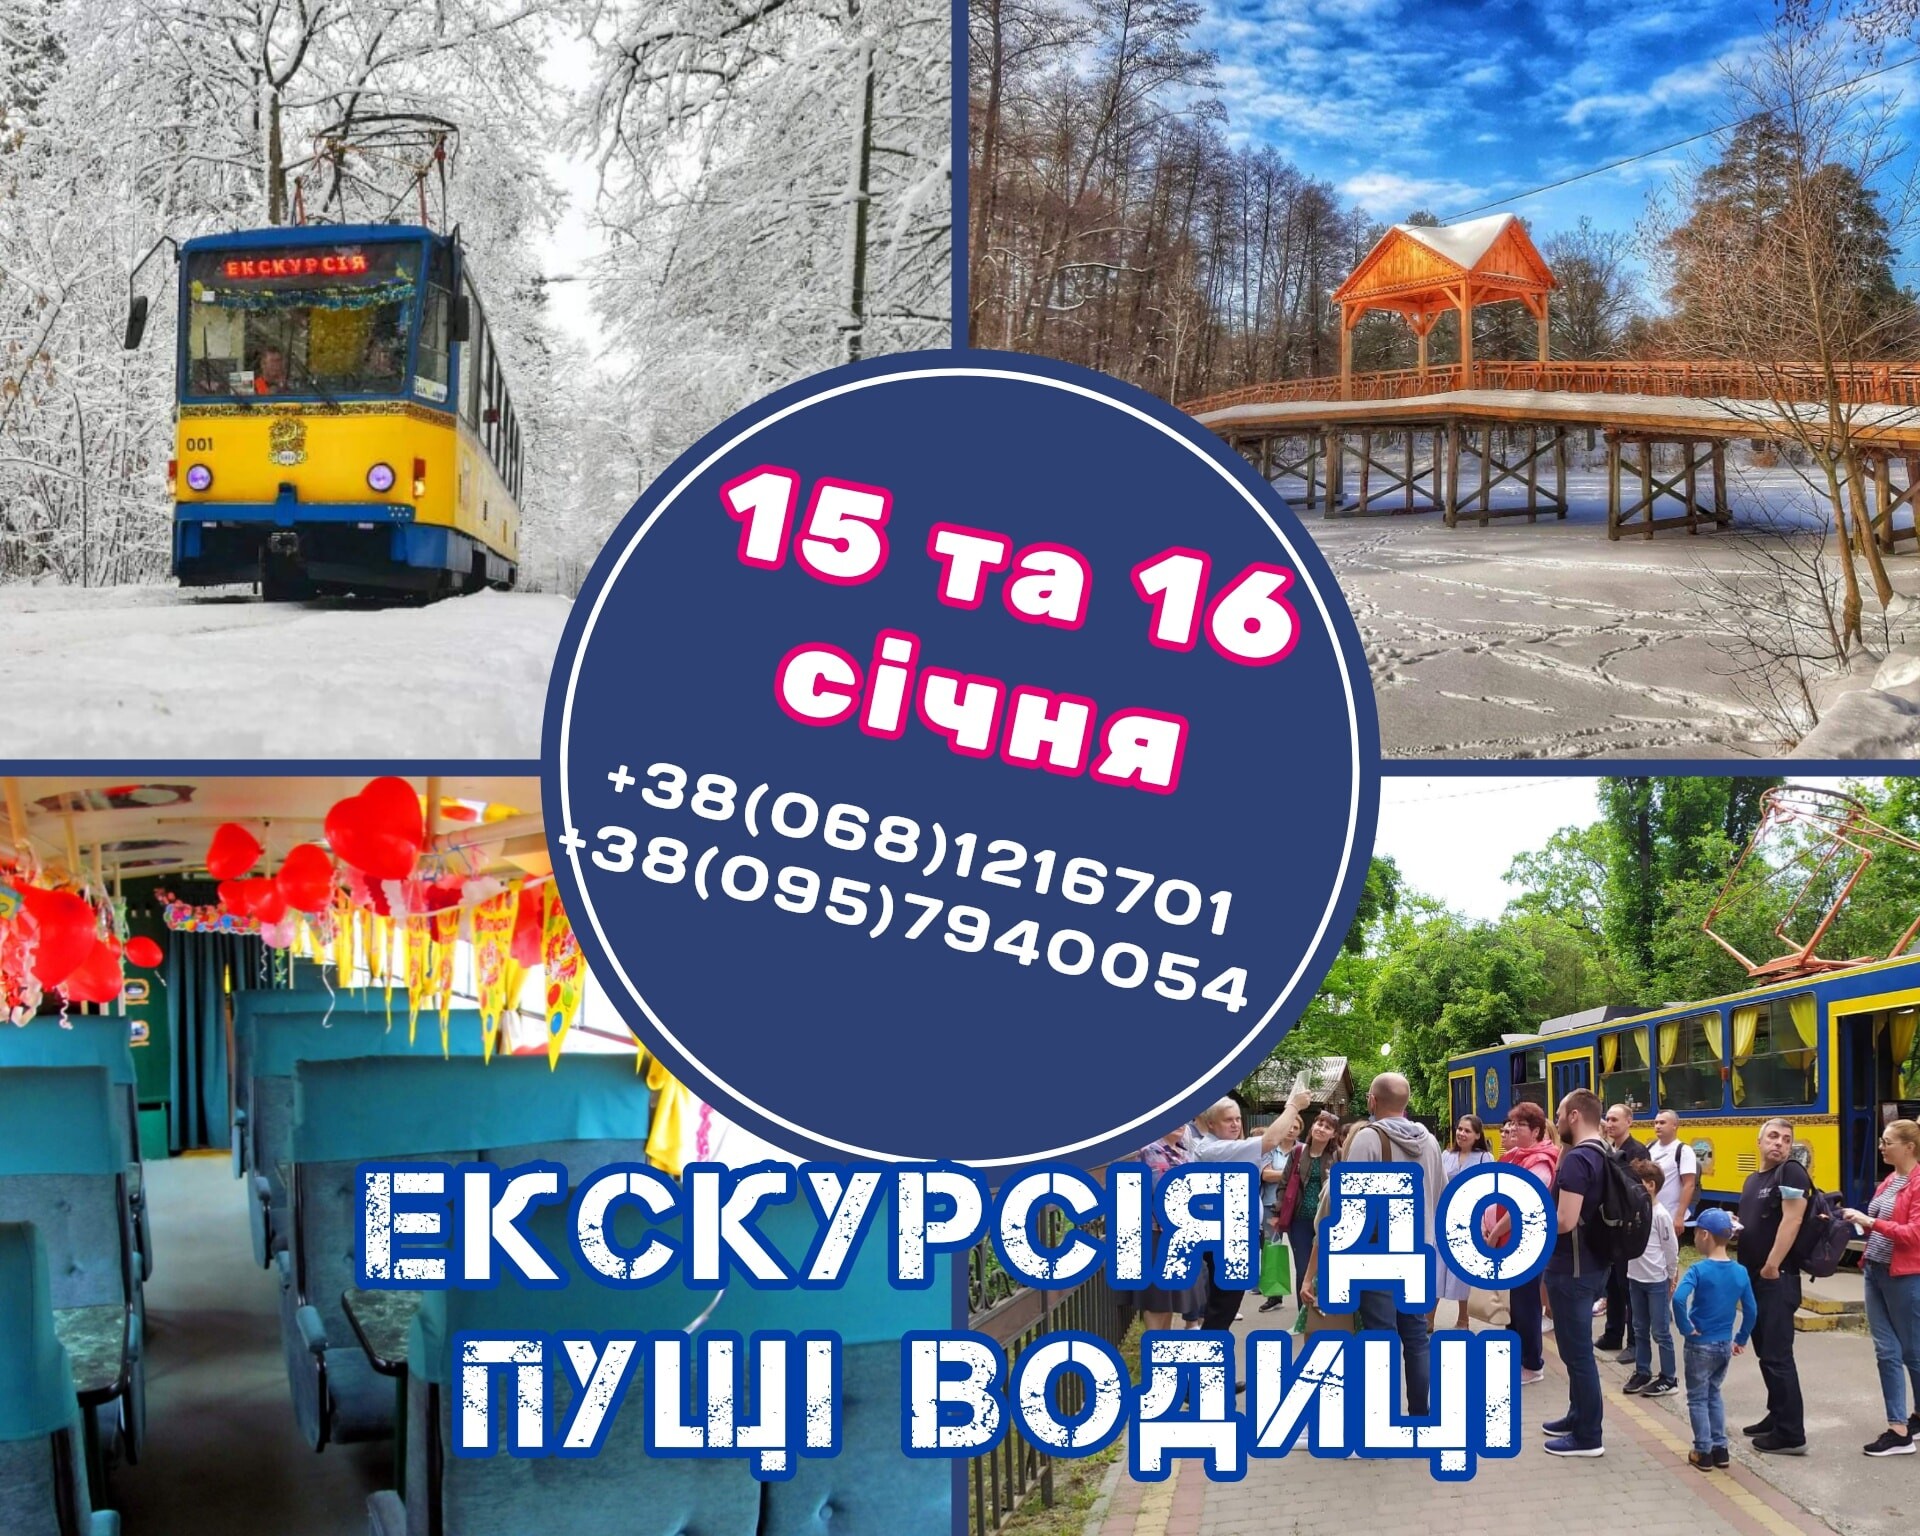 Афиша - Экскурсии - Экскурсия на трамвайчике в Пущу Водицу